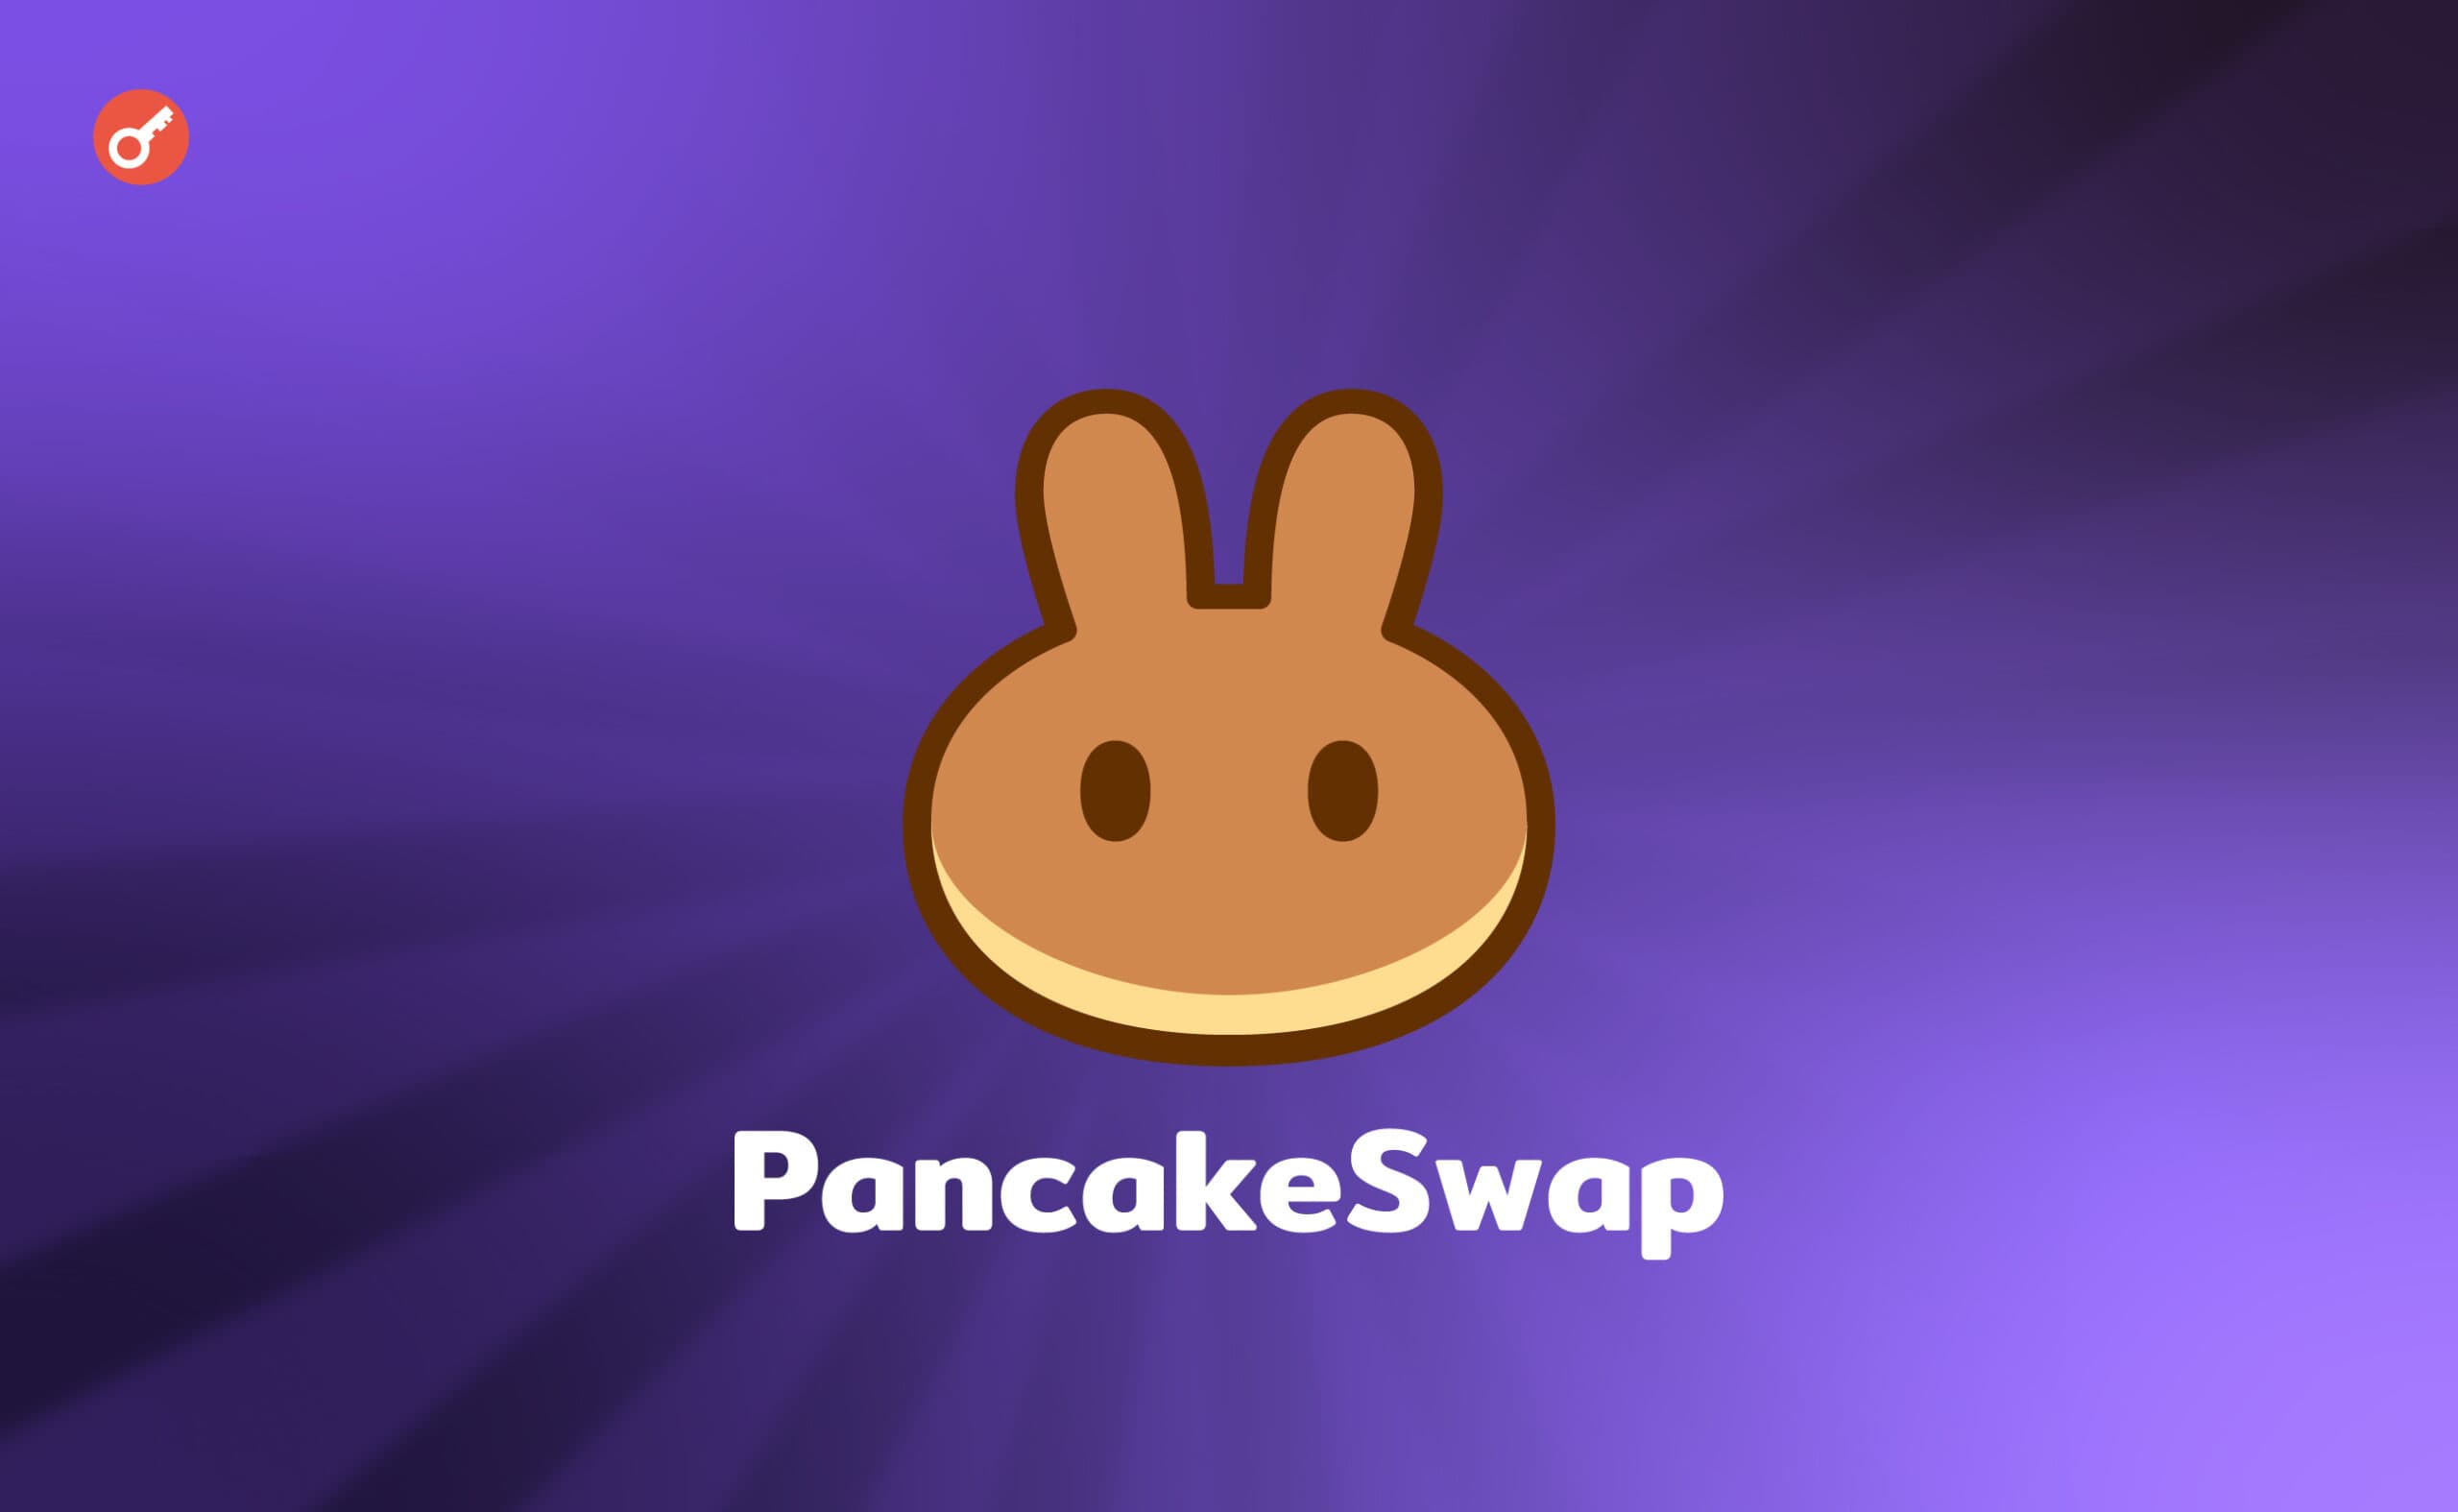 PancakeSwap запустила функцію Position Manager для управління активами. Головний колаж новини.